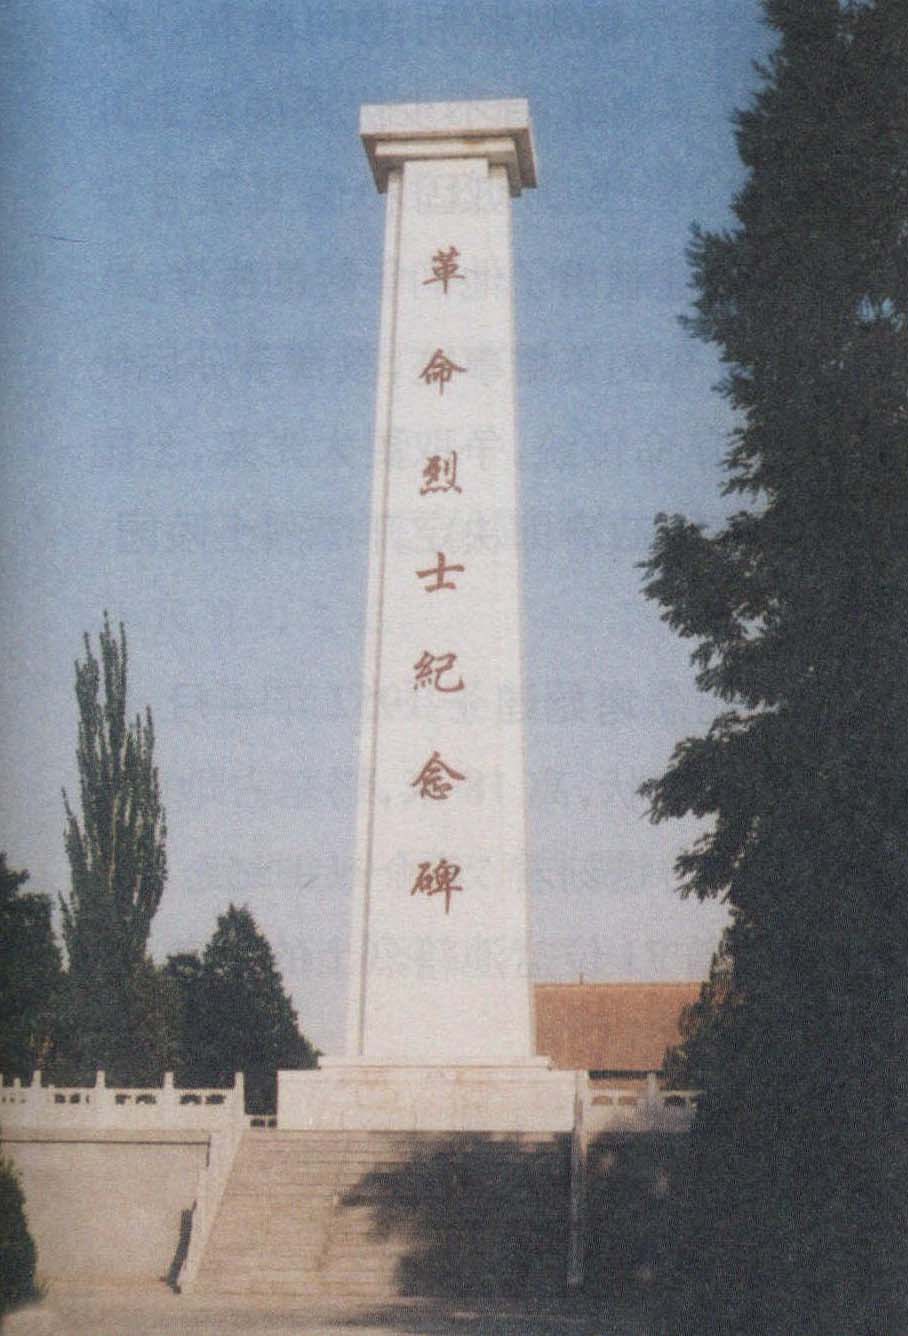 盐池县革命烈士纪念塔